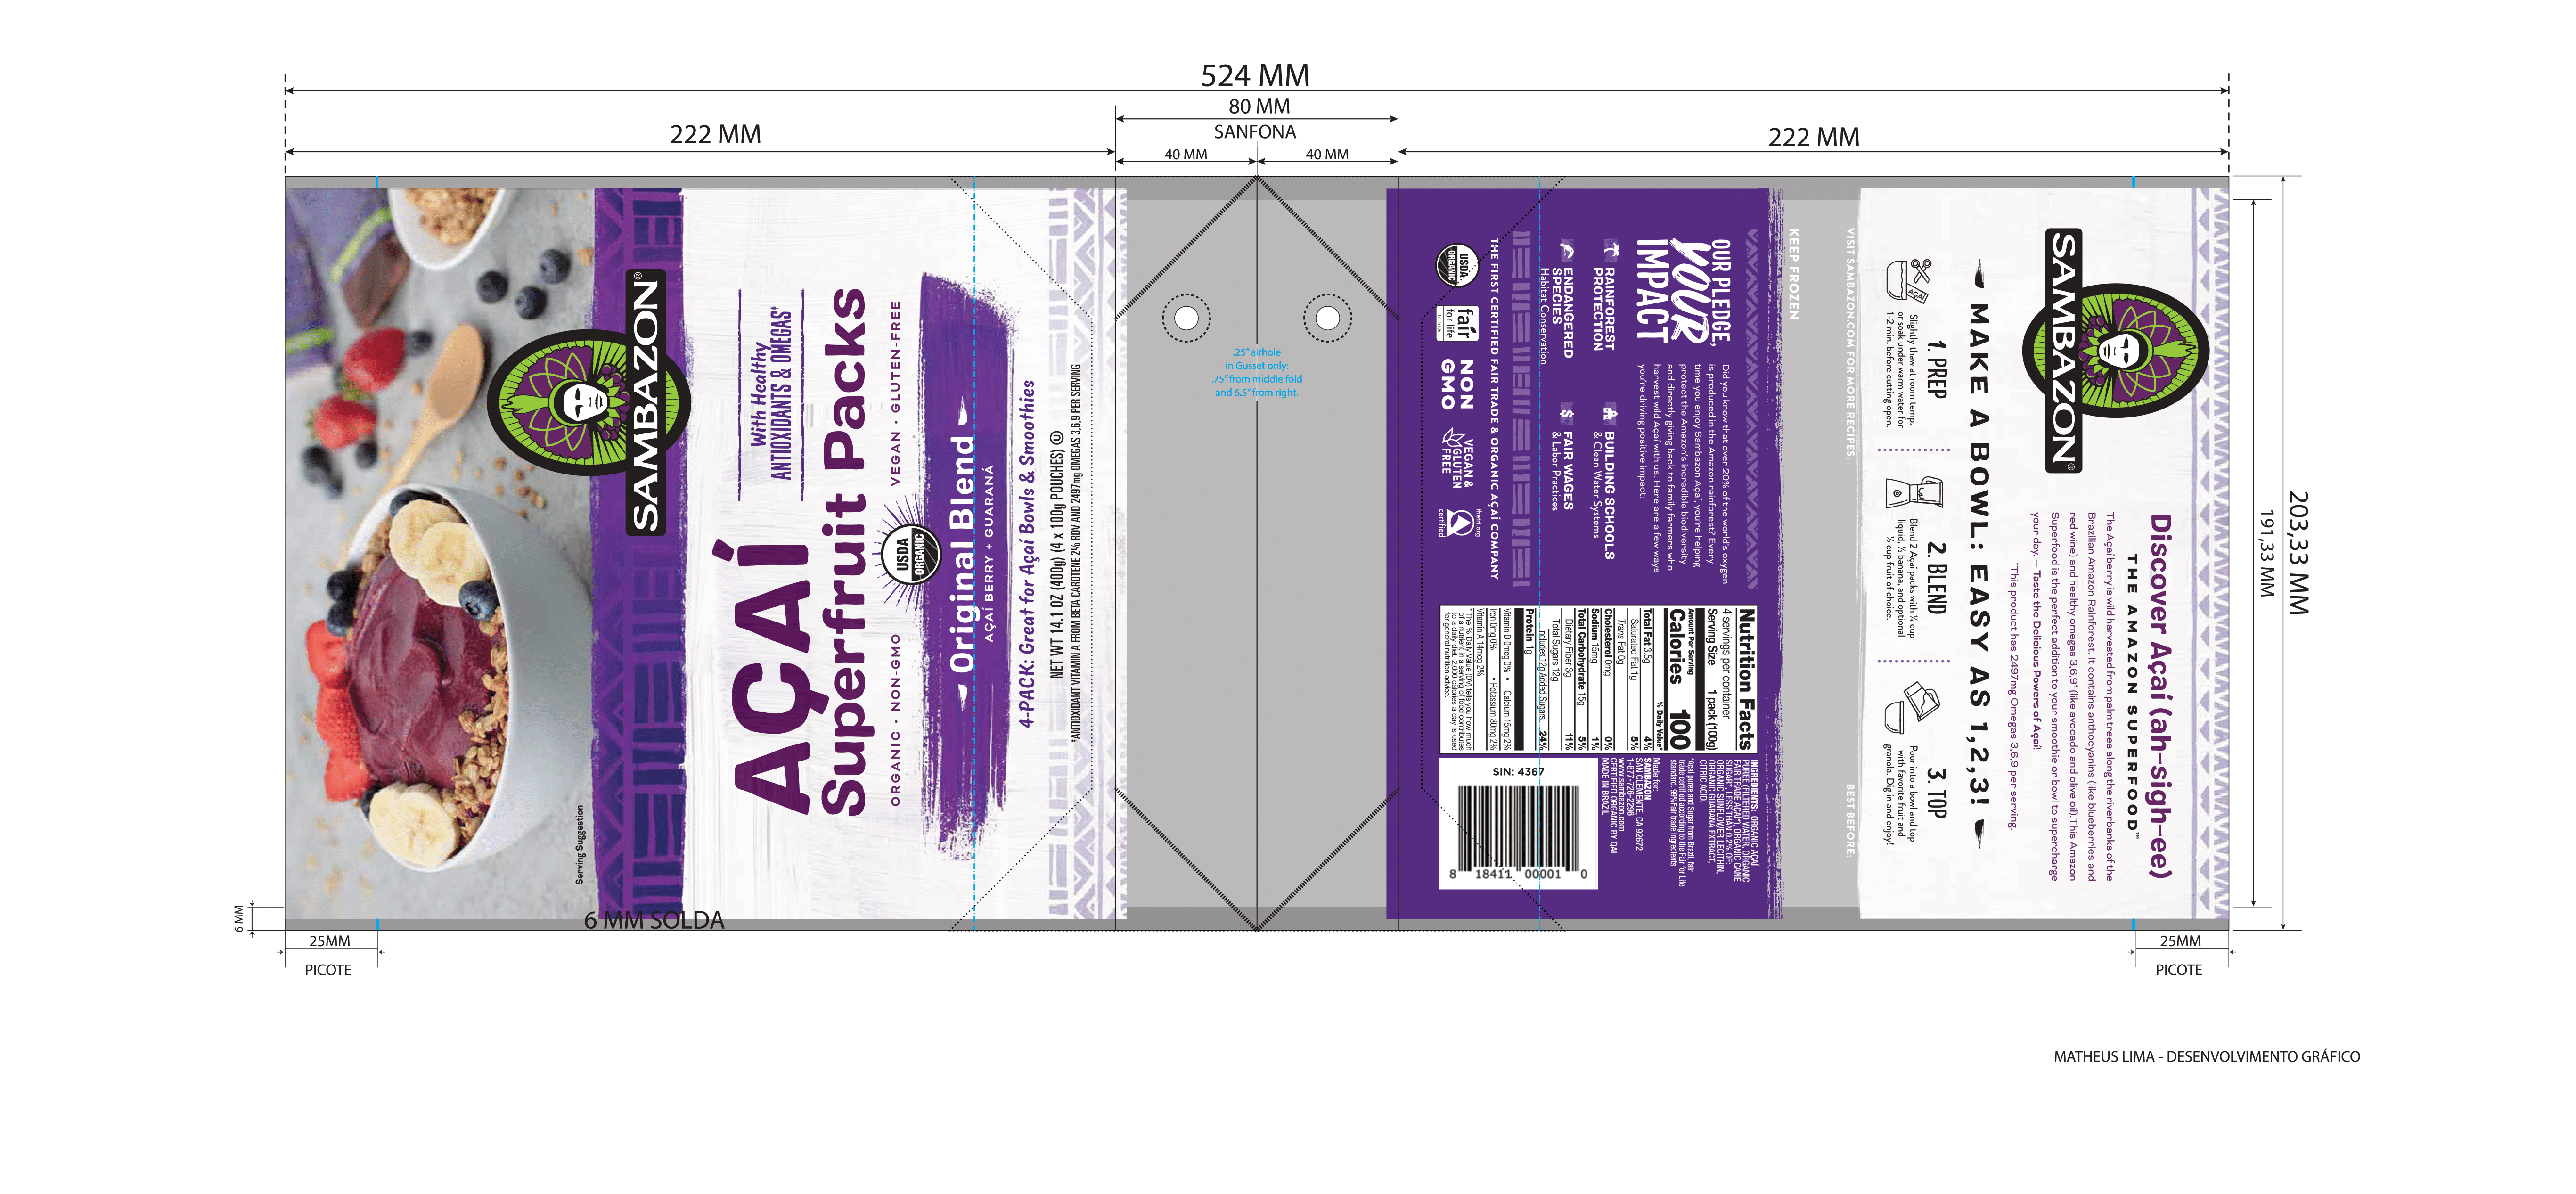 Sambazon Original Blend Frozen Acai Pack 10 units per case 14.2 oz Product Label